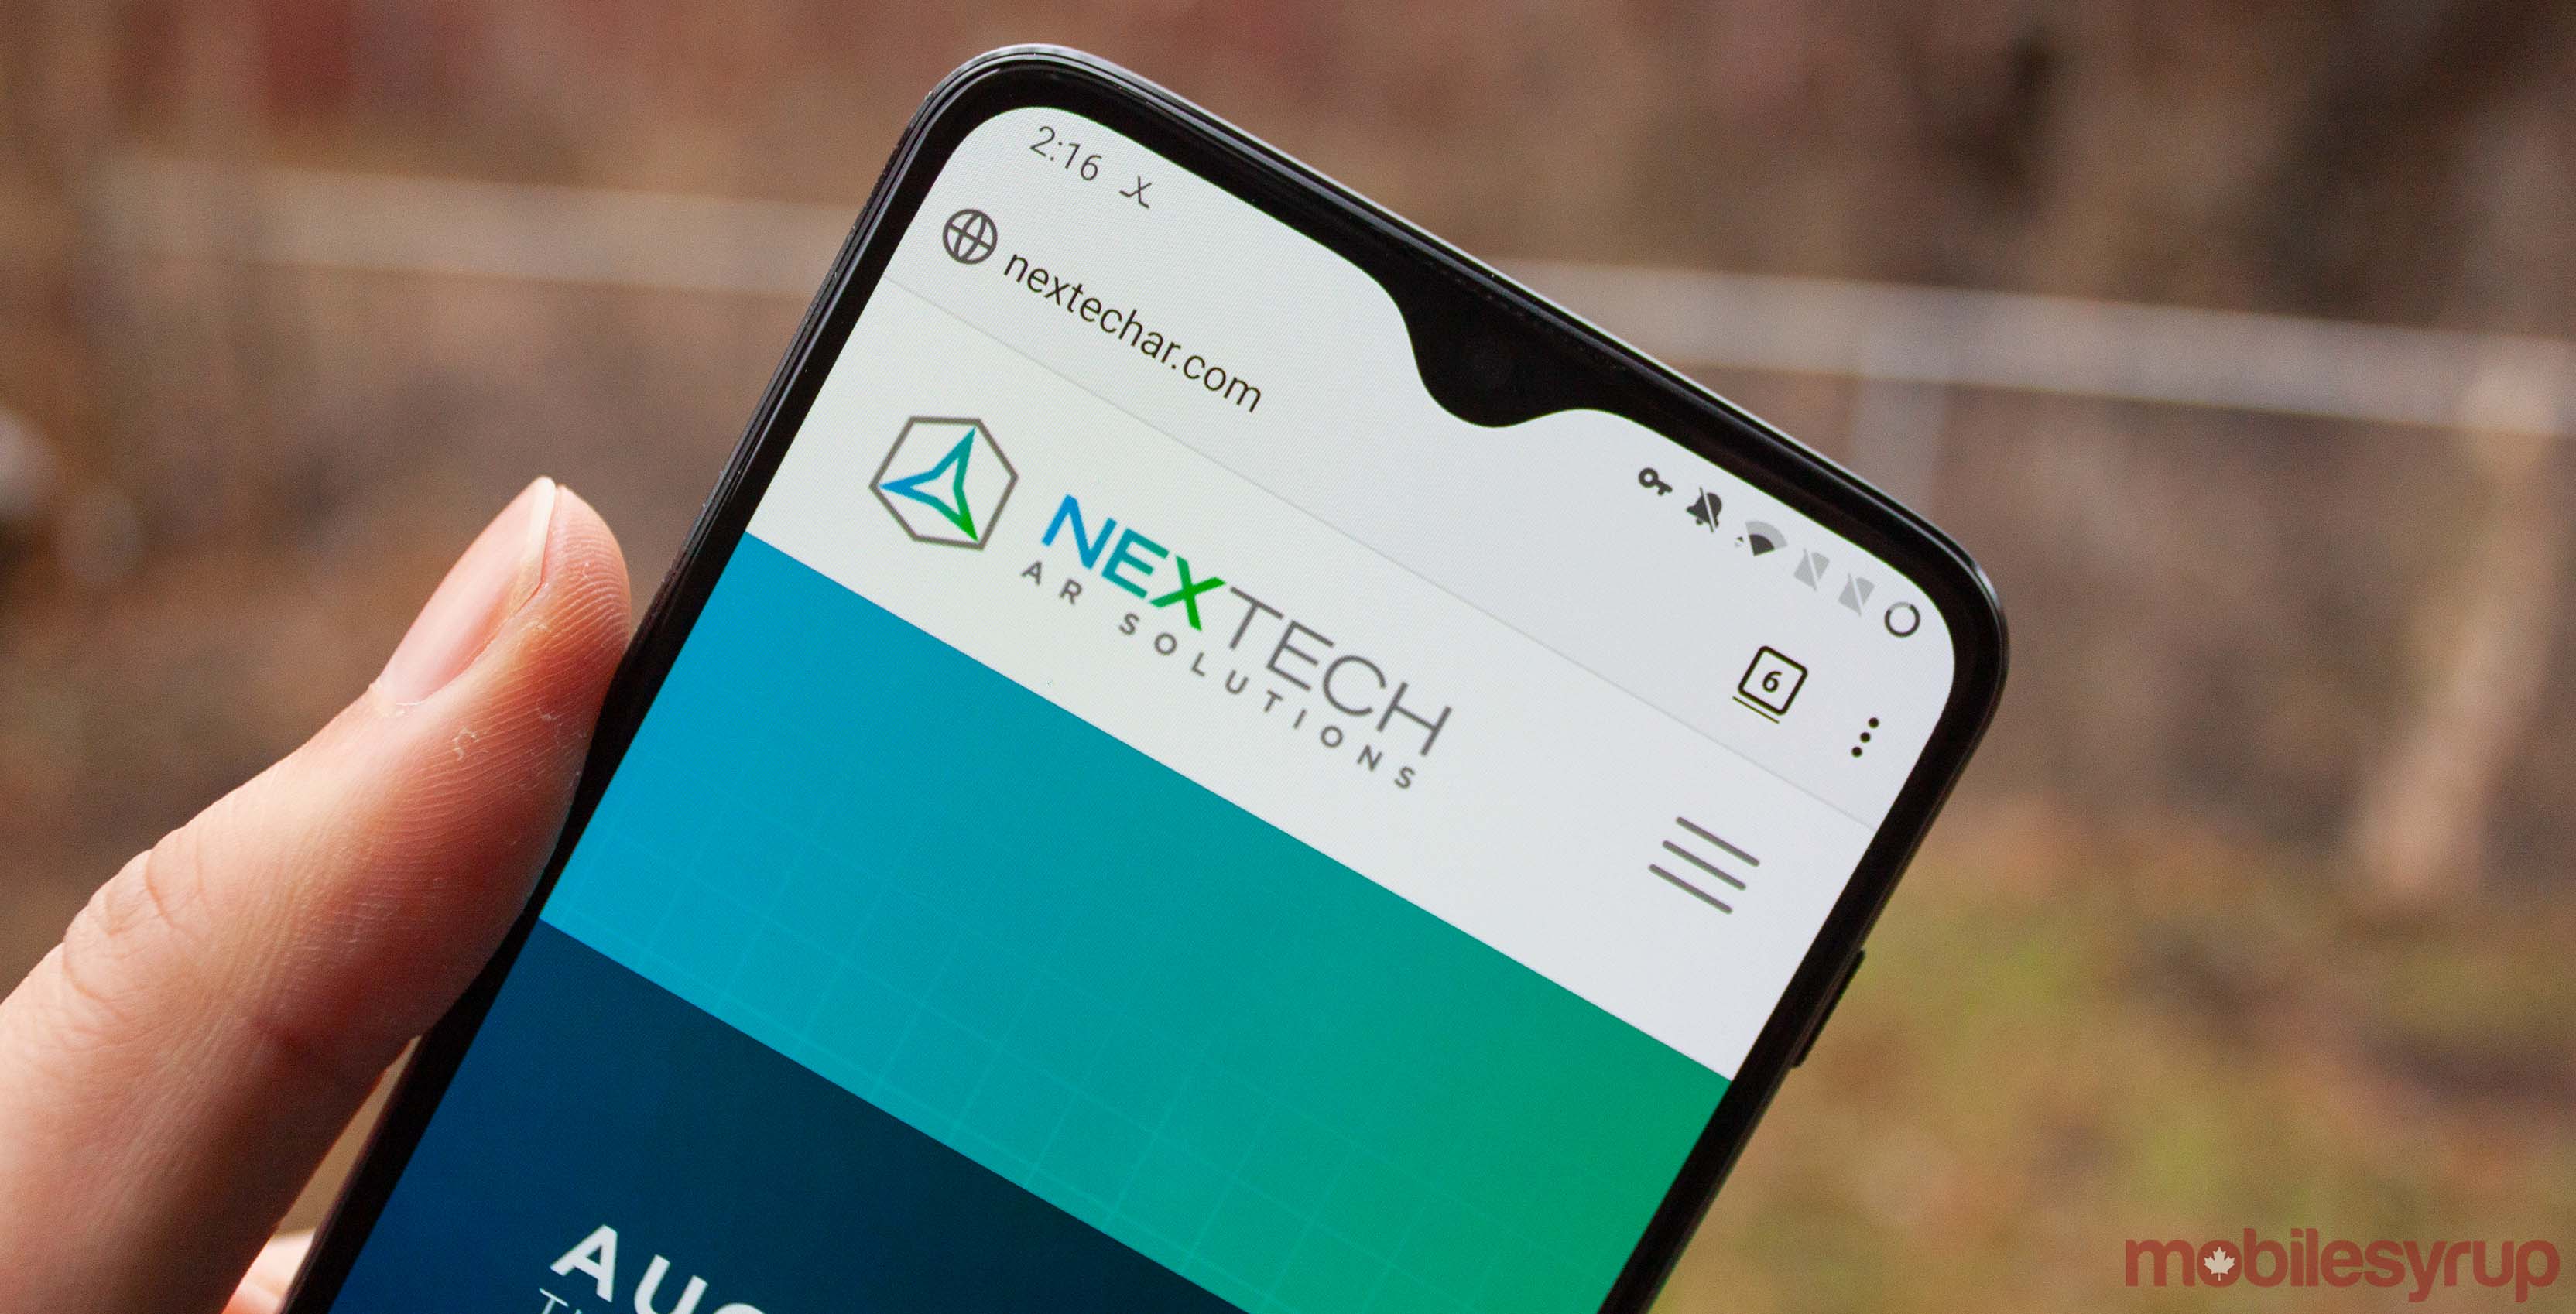 NexTech website